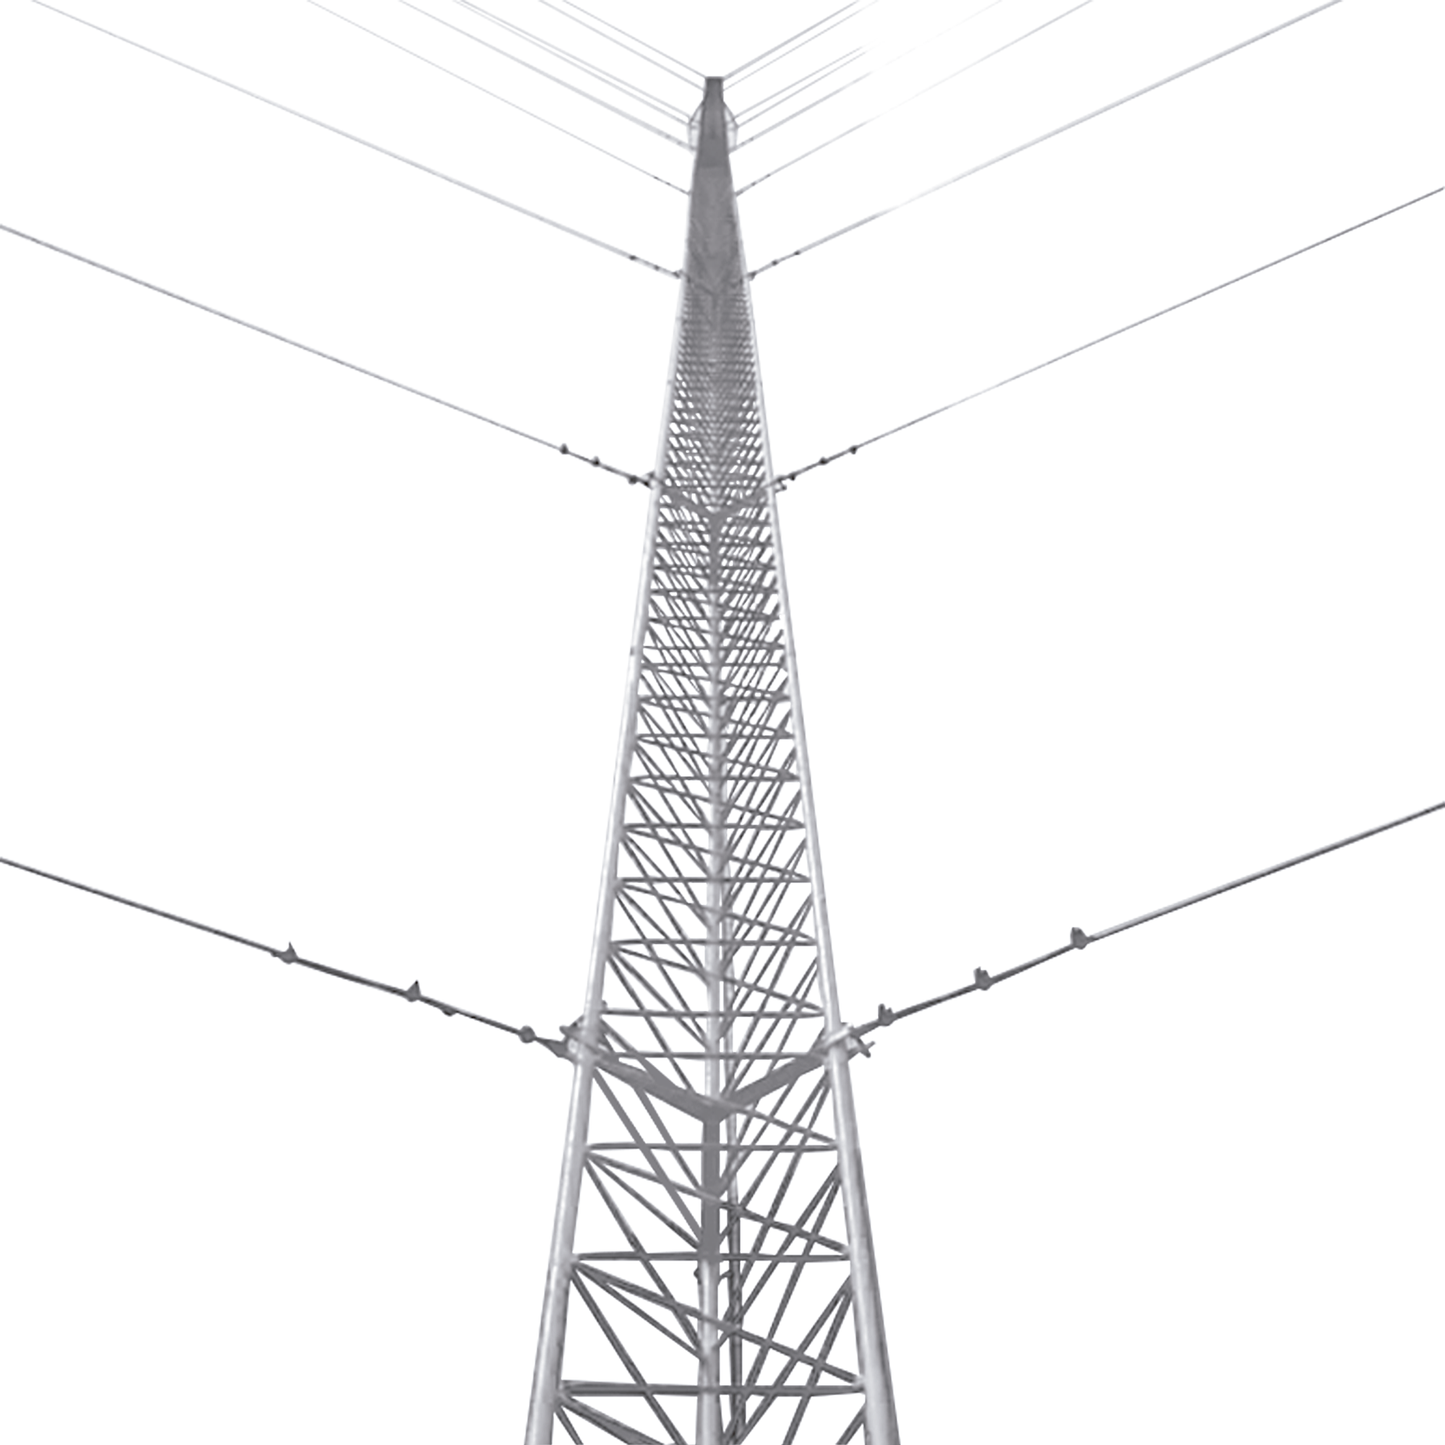 Kit de Torre Arriostrada de Techo de 3 m con Tramo STZ30G Galvanizada por InmersiÃ³n en Caliente (No incluye retenida).